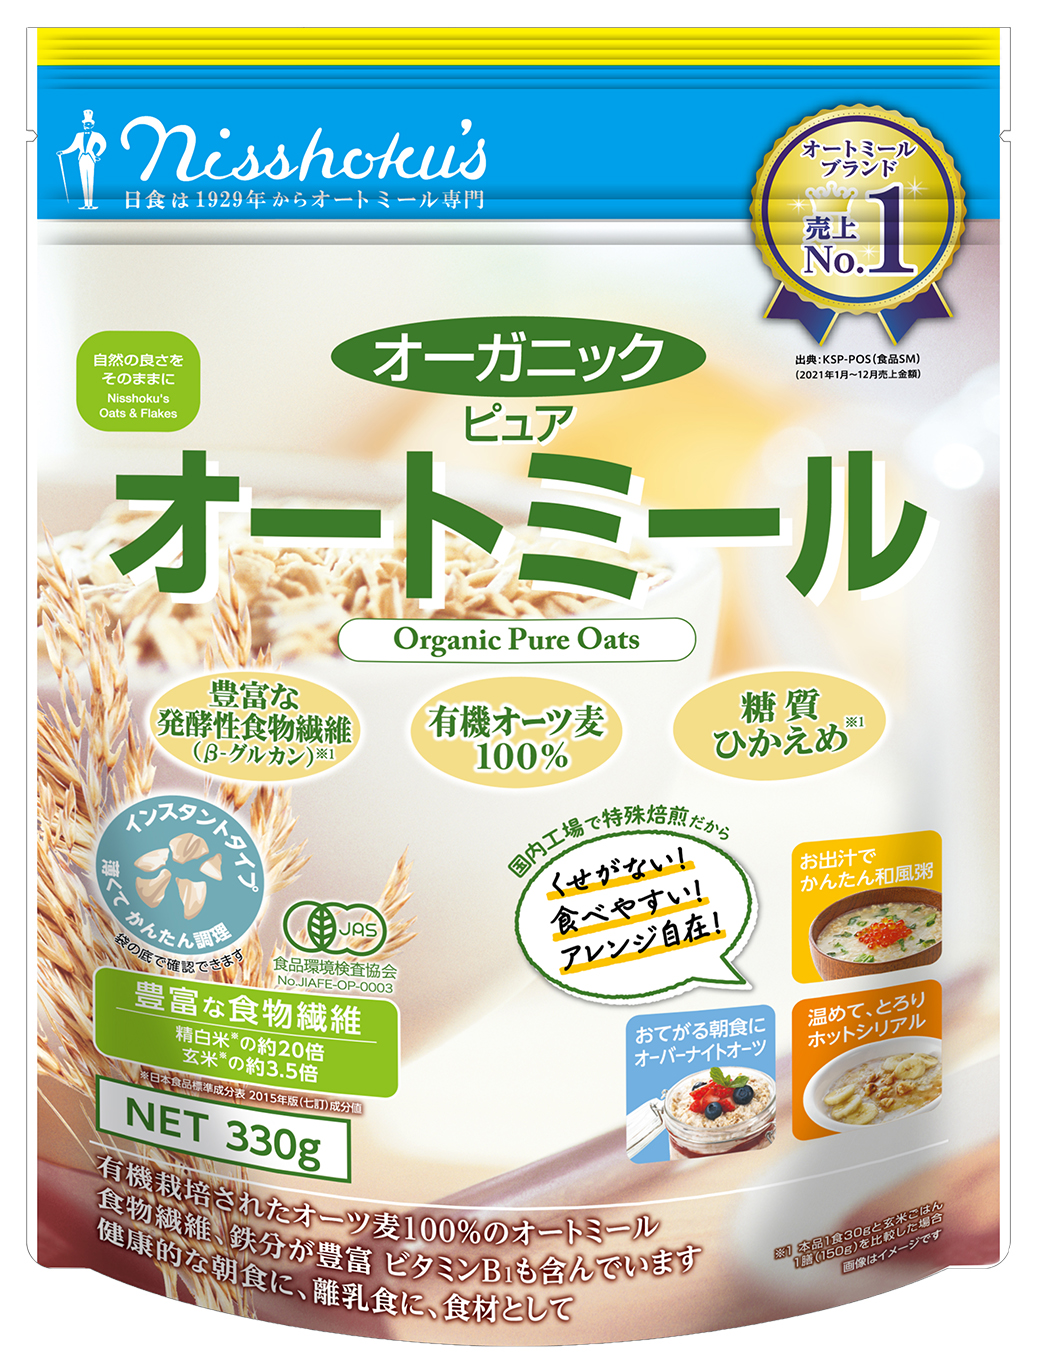 日食オーガニックピュアオートミール グラノーラ コーンフレーク製品の日本食品製造合資会社